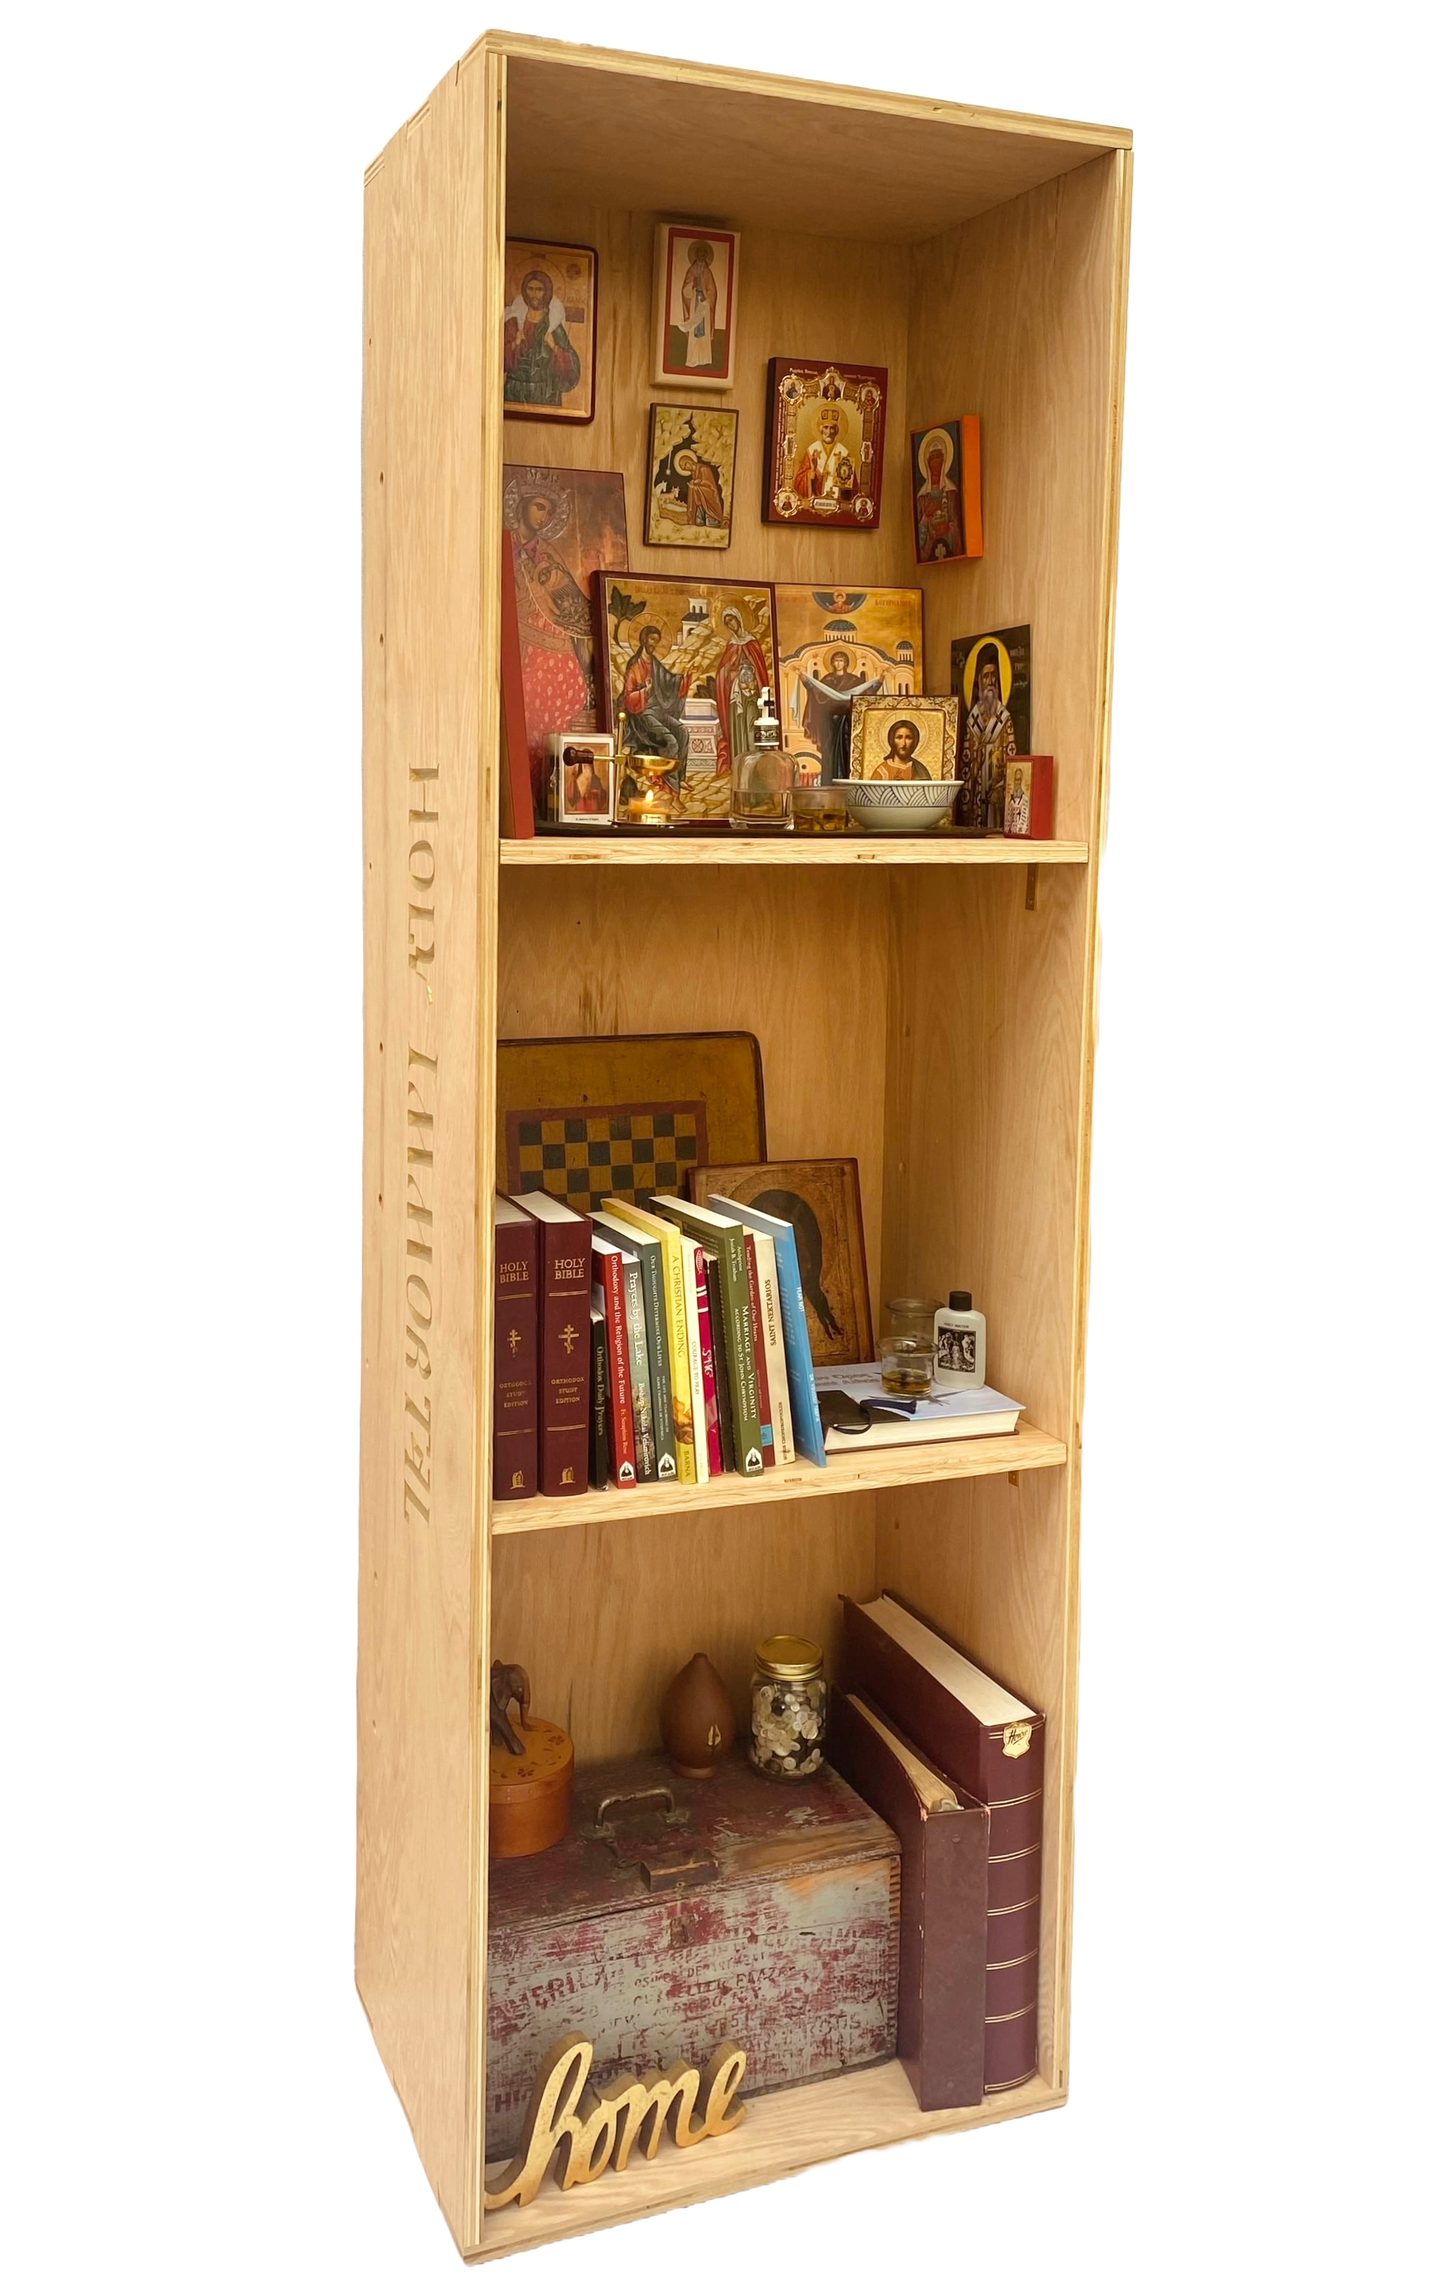 Dovetail Joinery Casket (Bookshelf Optional)